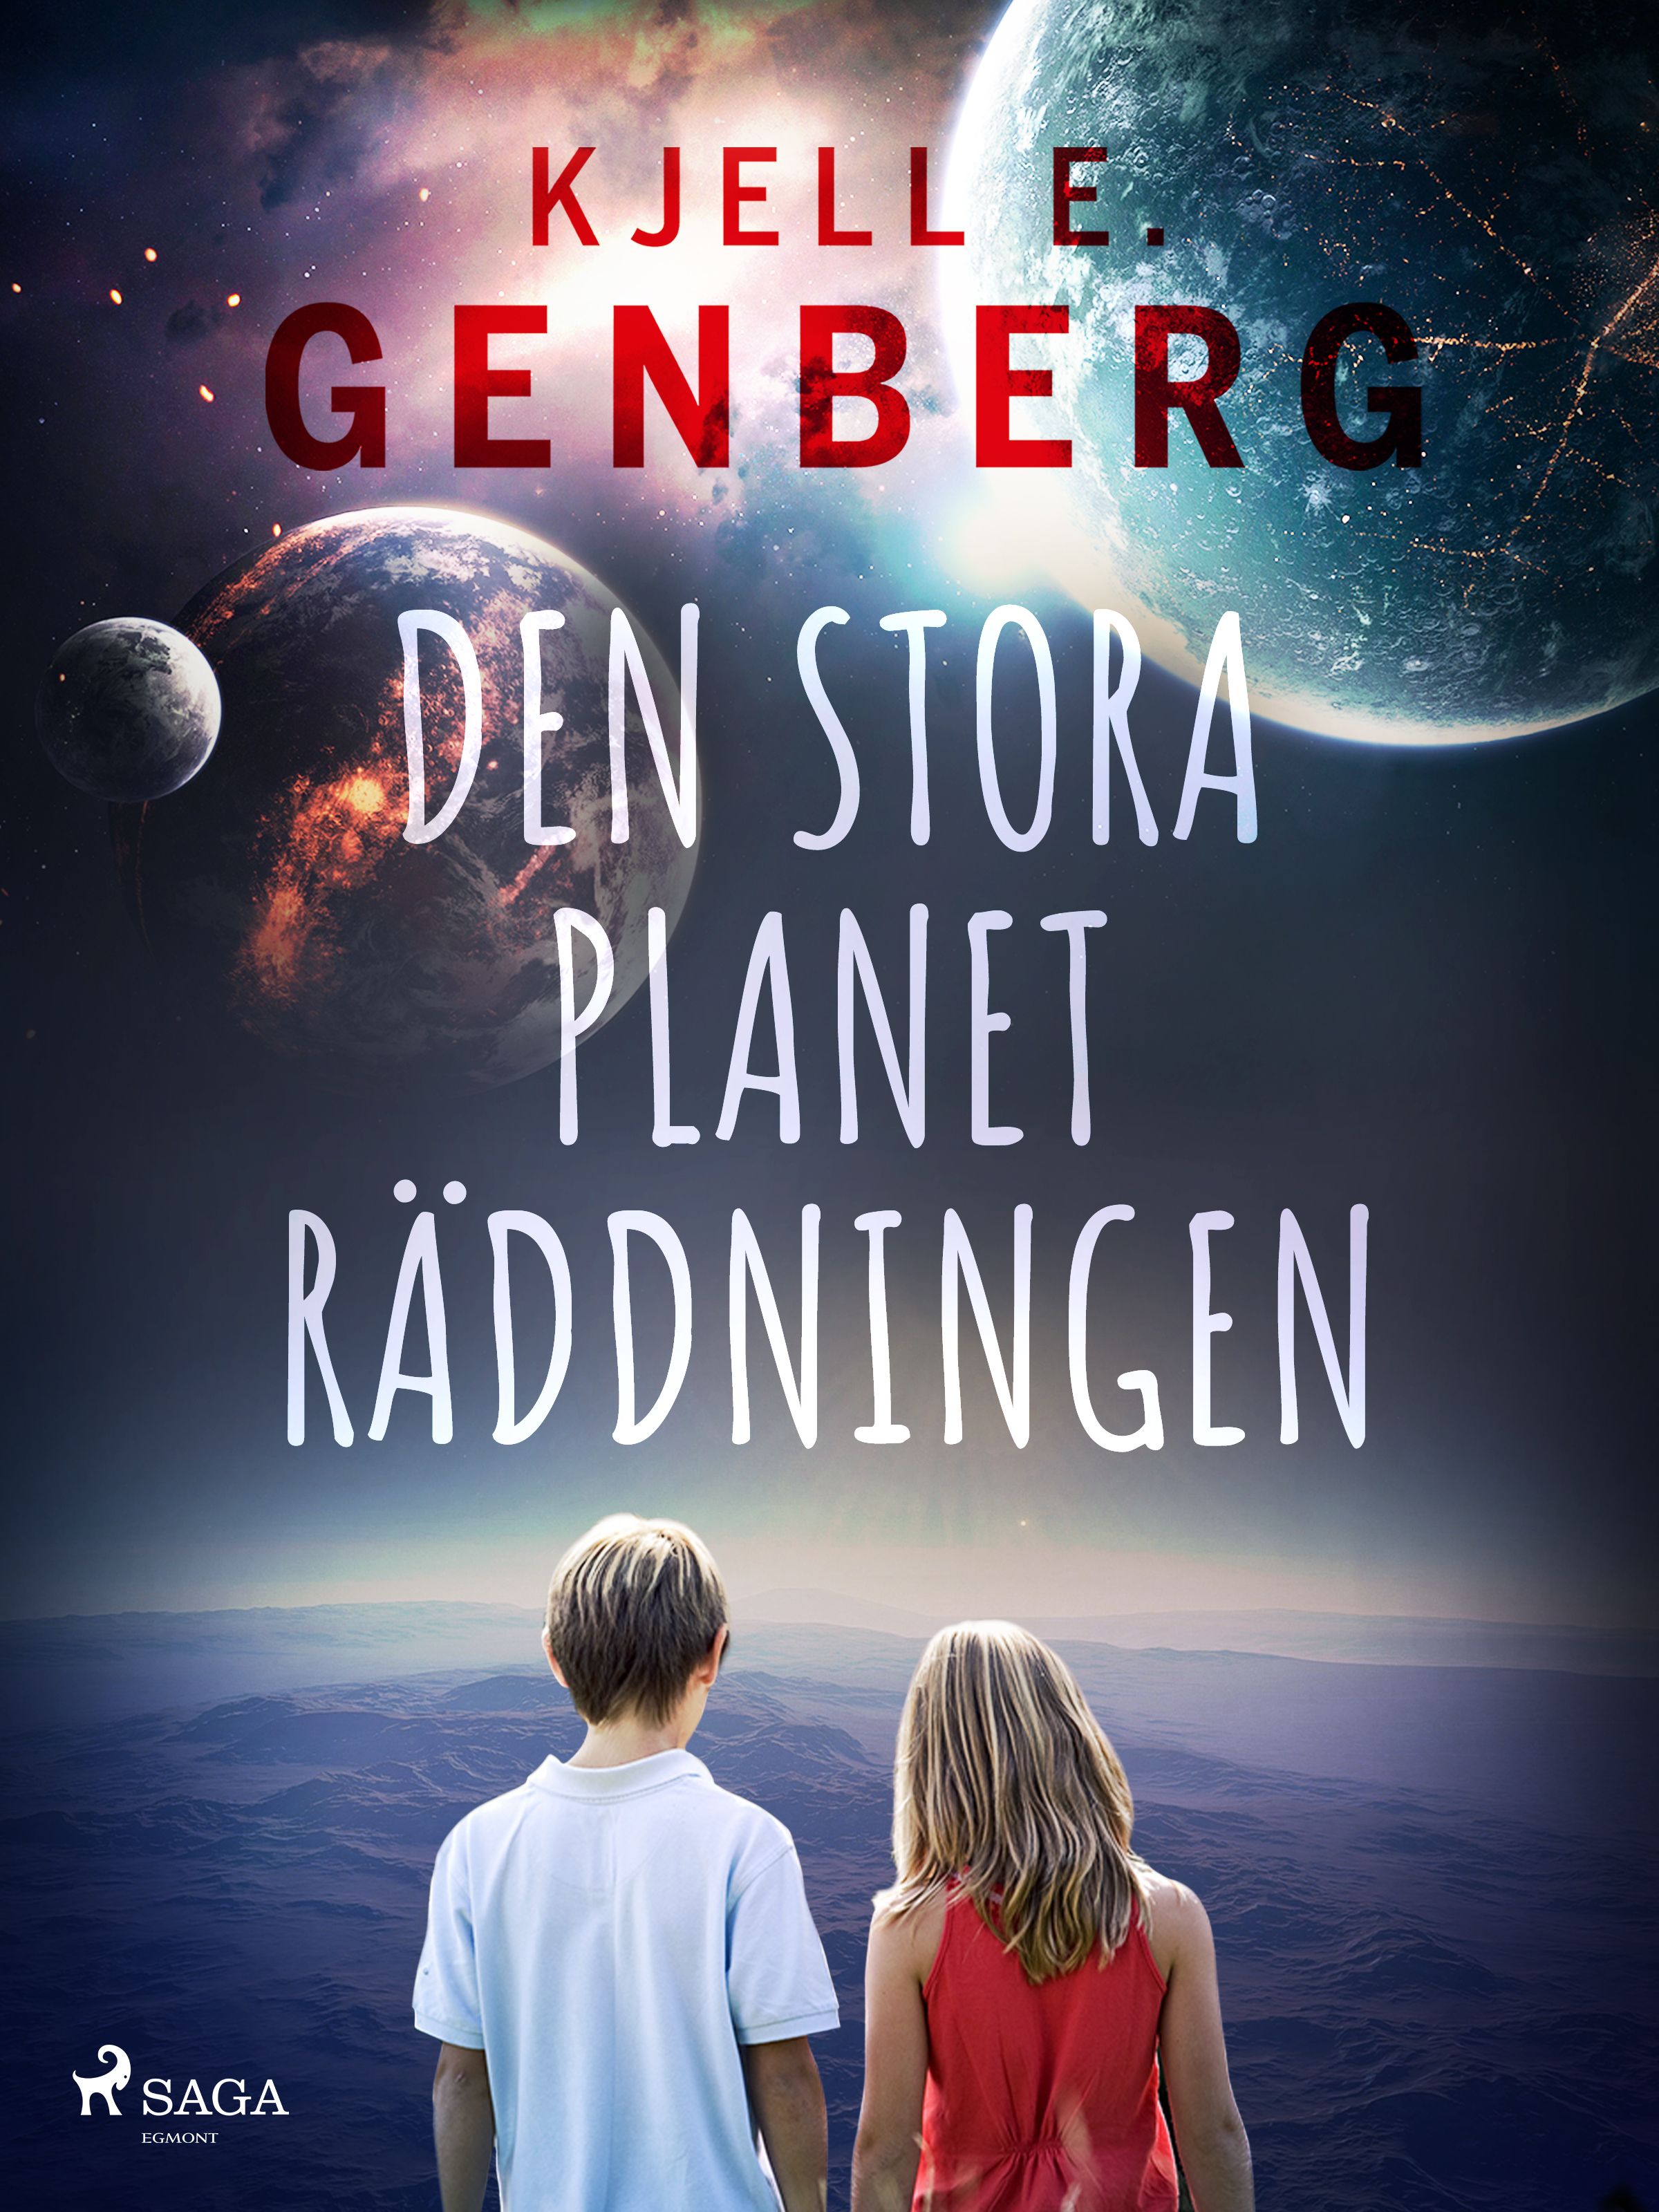 Den stora planeträddningen, e-bok av Kjell E. Genberg